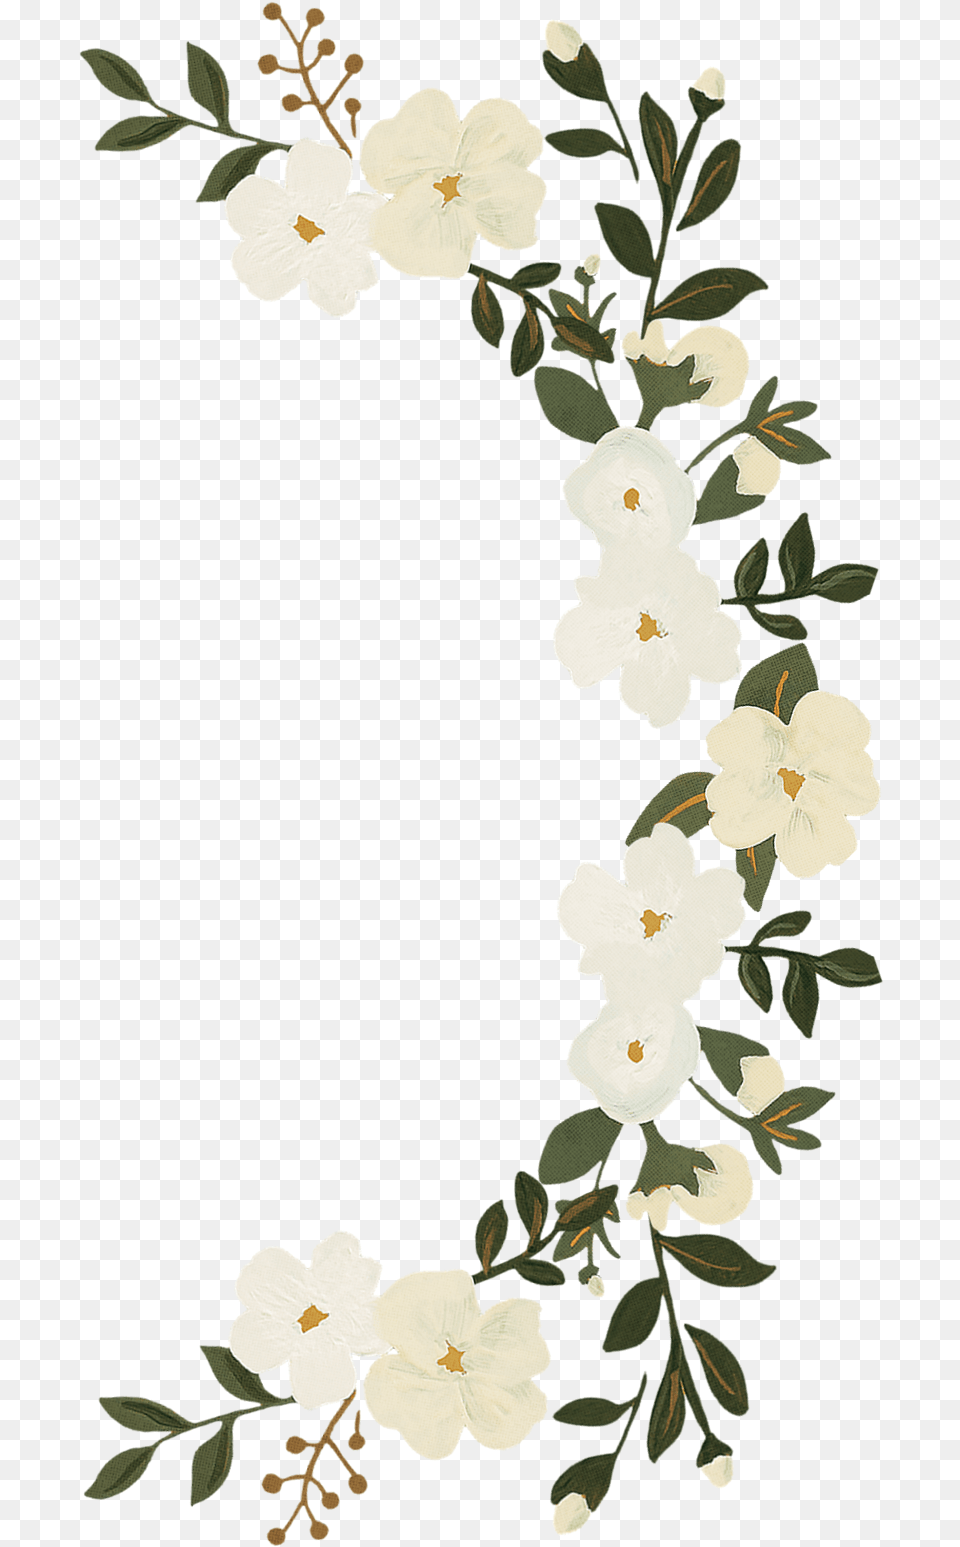 Transparent Background Flower Ring, Plant, Art, Floral Design, Graphics Png Image